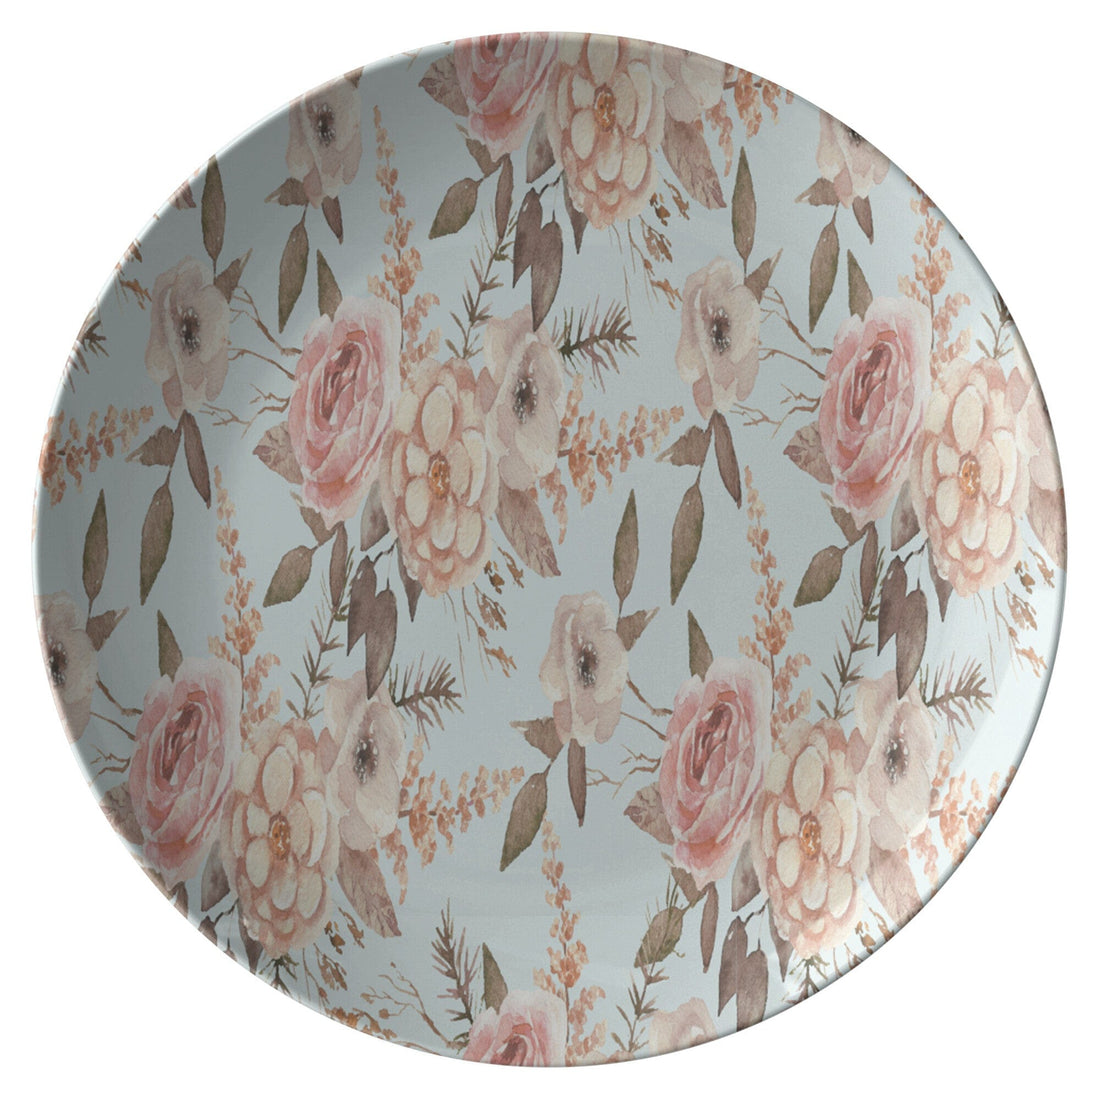 Kate McEnroe New York Elegant Floral Dinner PlatesPlates9820SINGLE